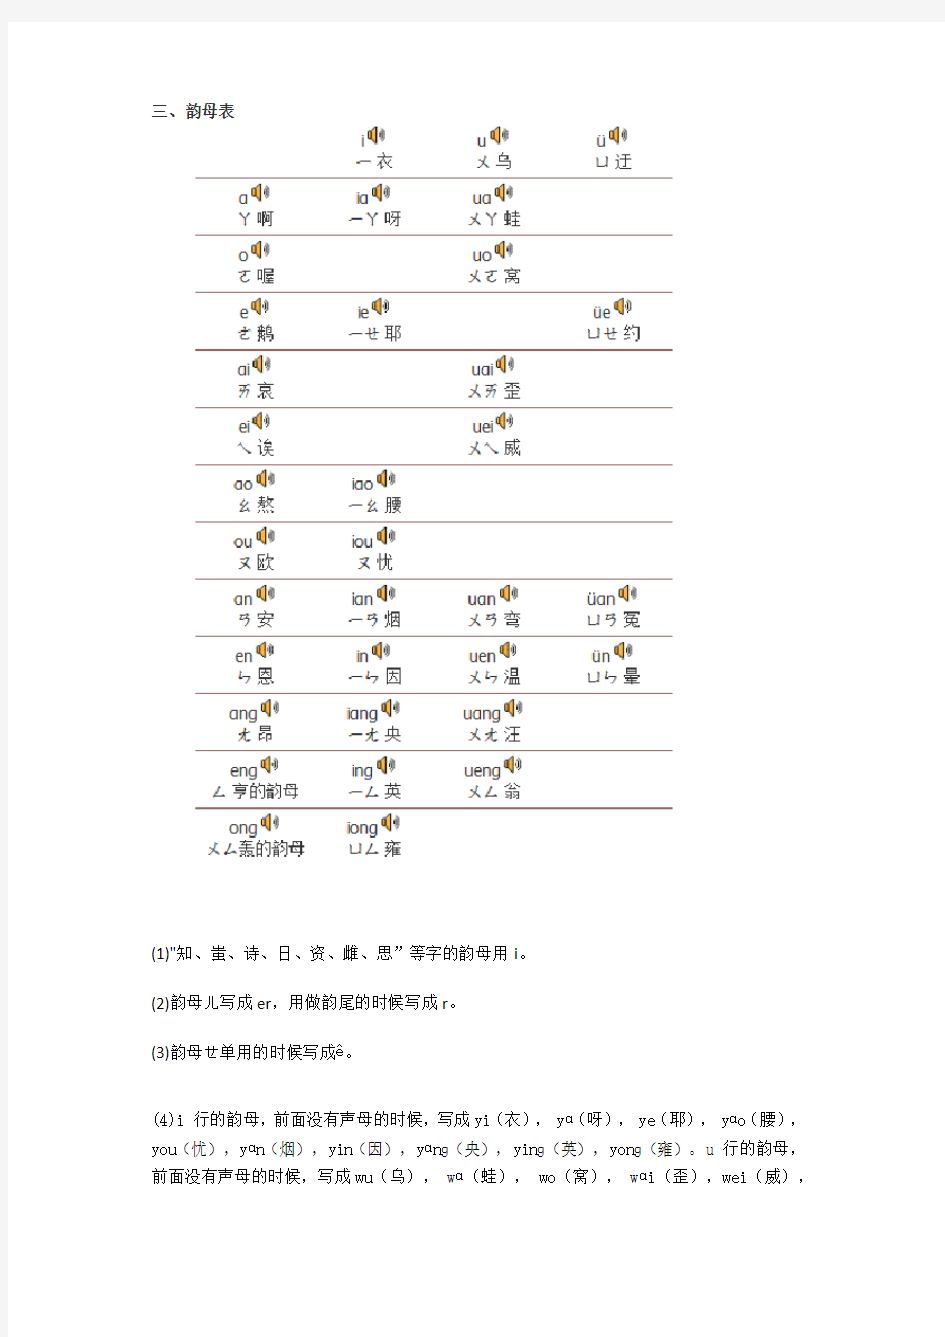 汉语拼音方案,声母、韵母真人标准发音!